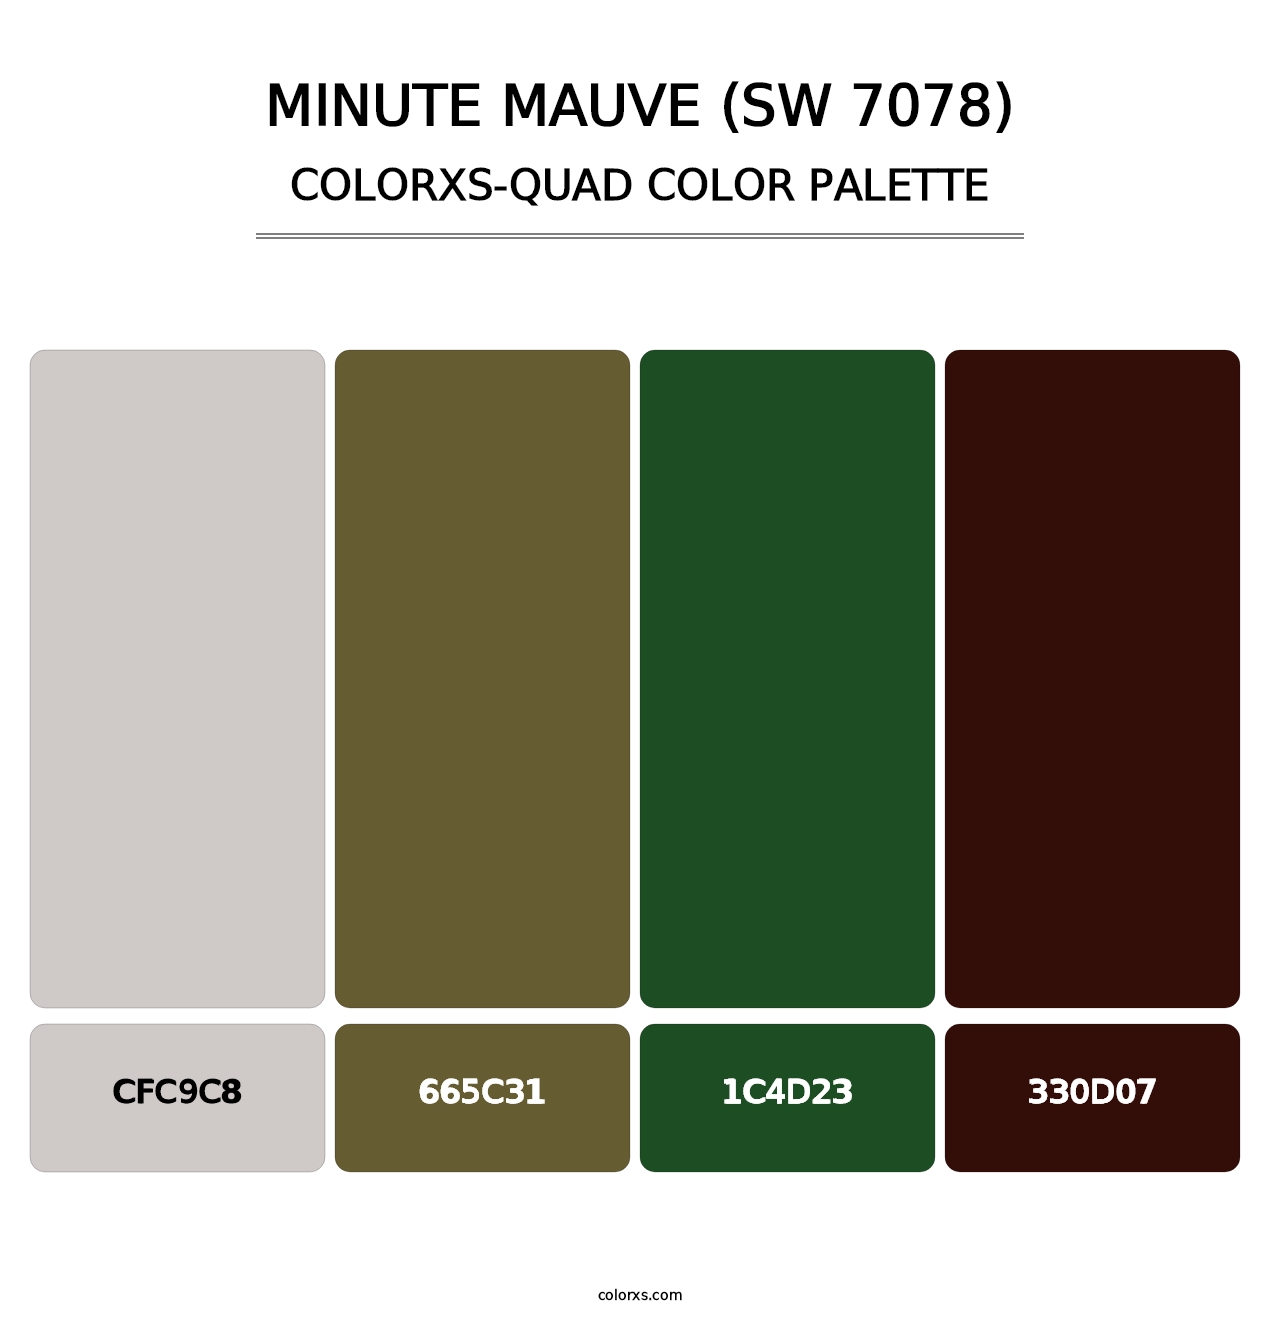 Minute Mauve (SW 7078) - Colorxs Quad Palette